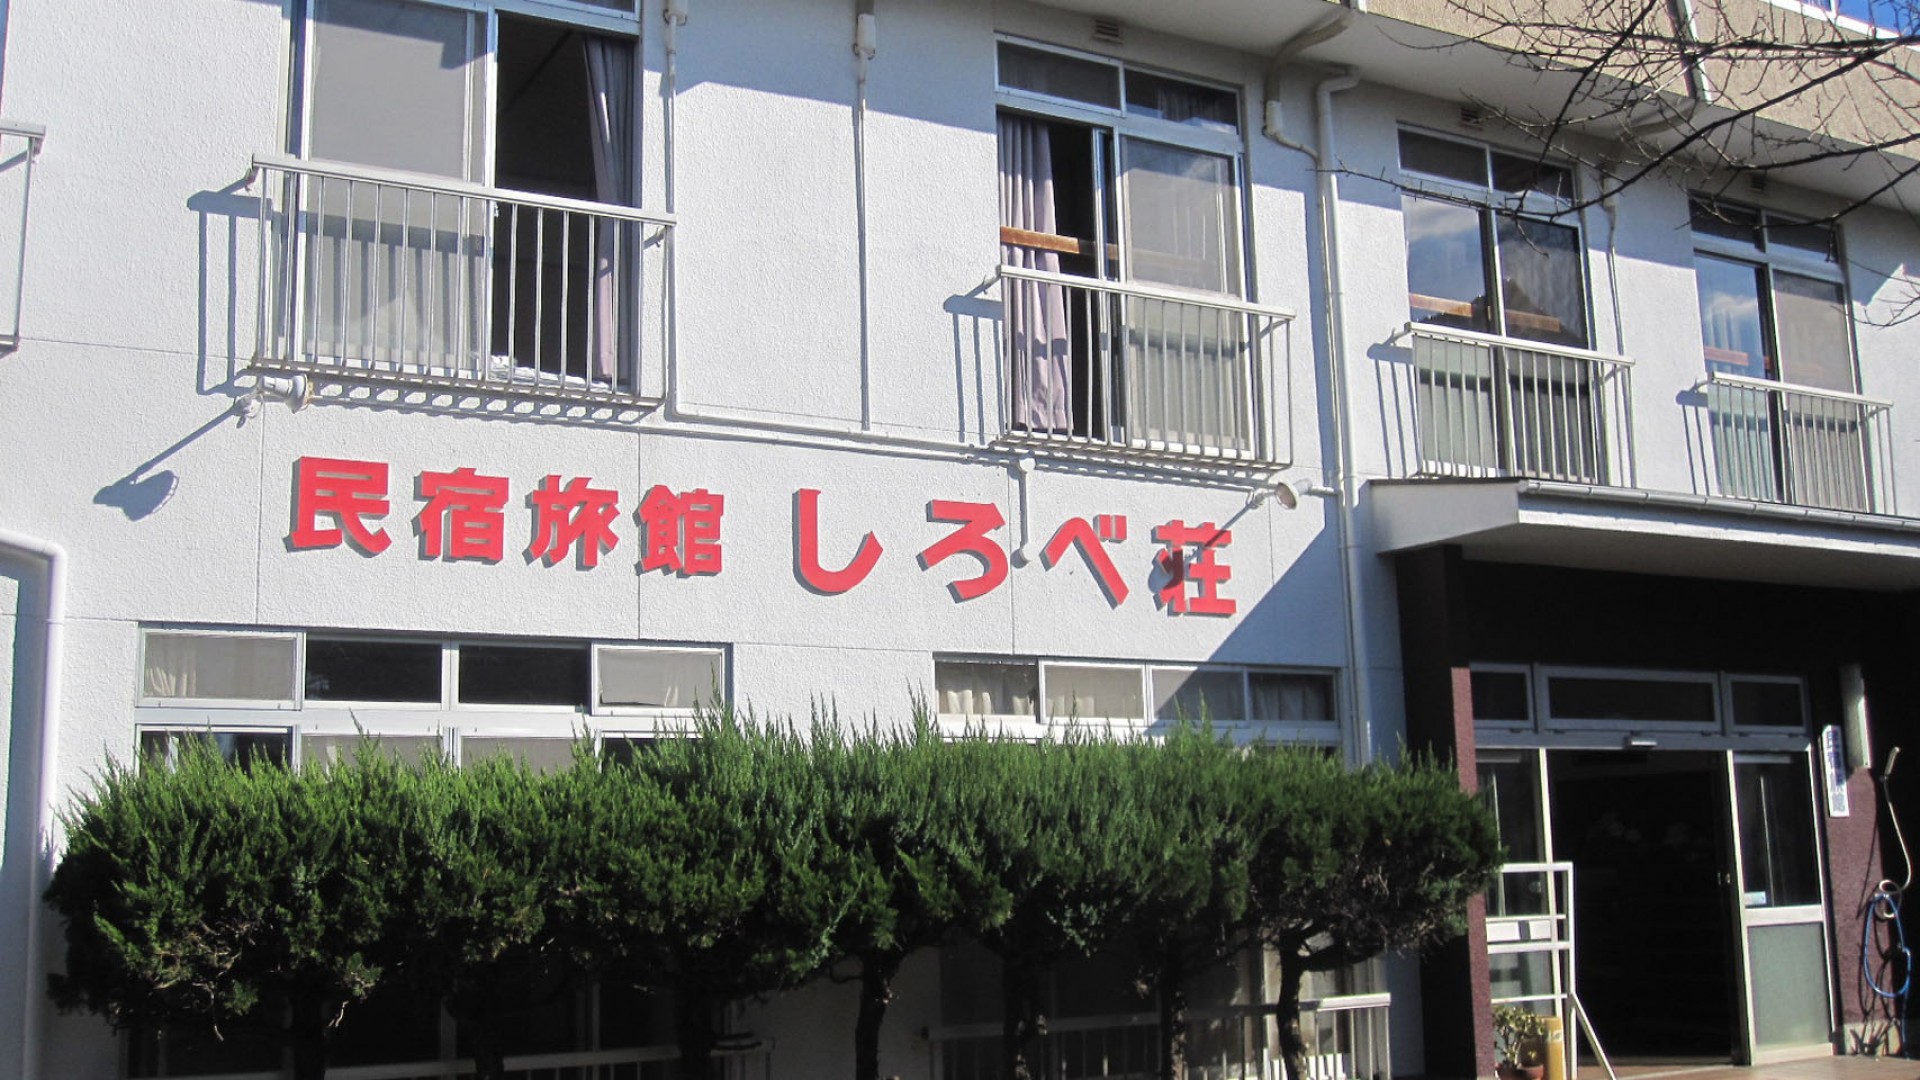 Casa de huéspedes Miura